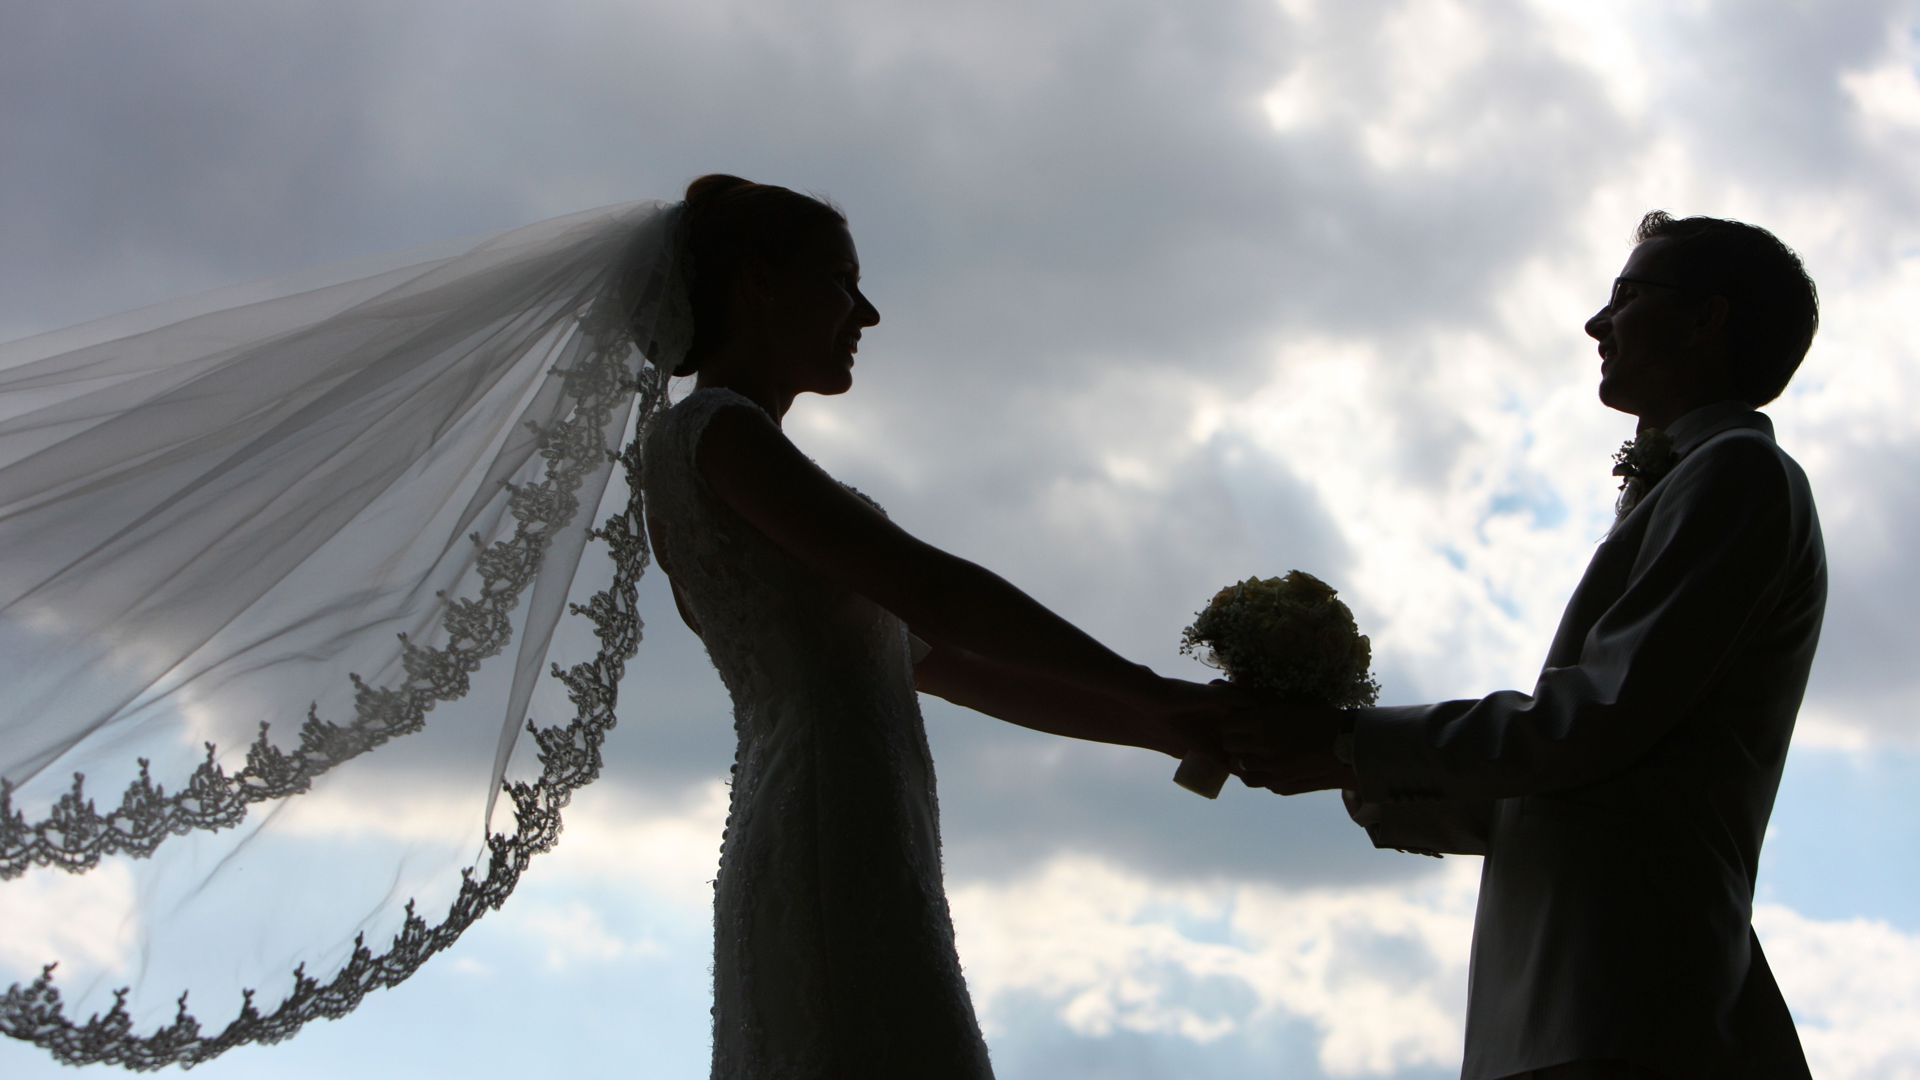 Die Silhouette eines frisch vermählten Hochzeitspaares  